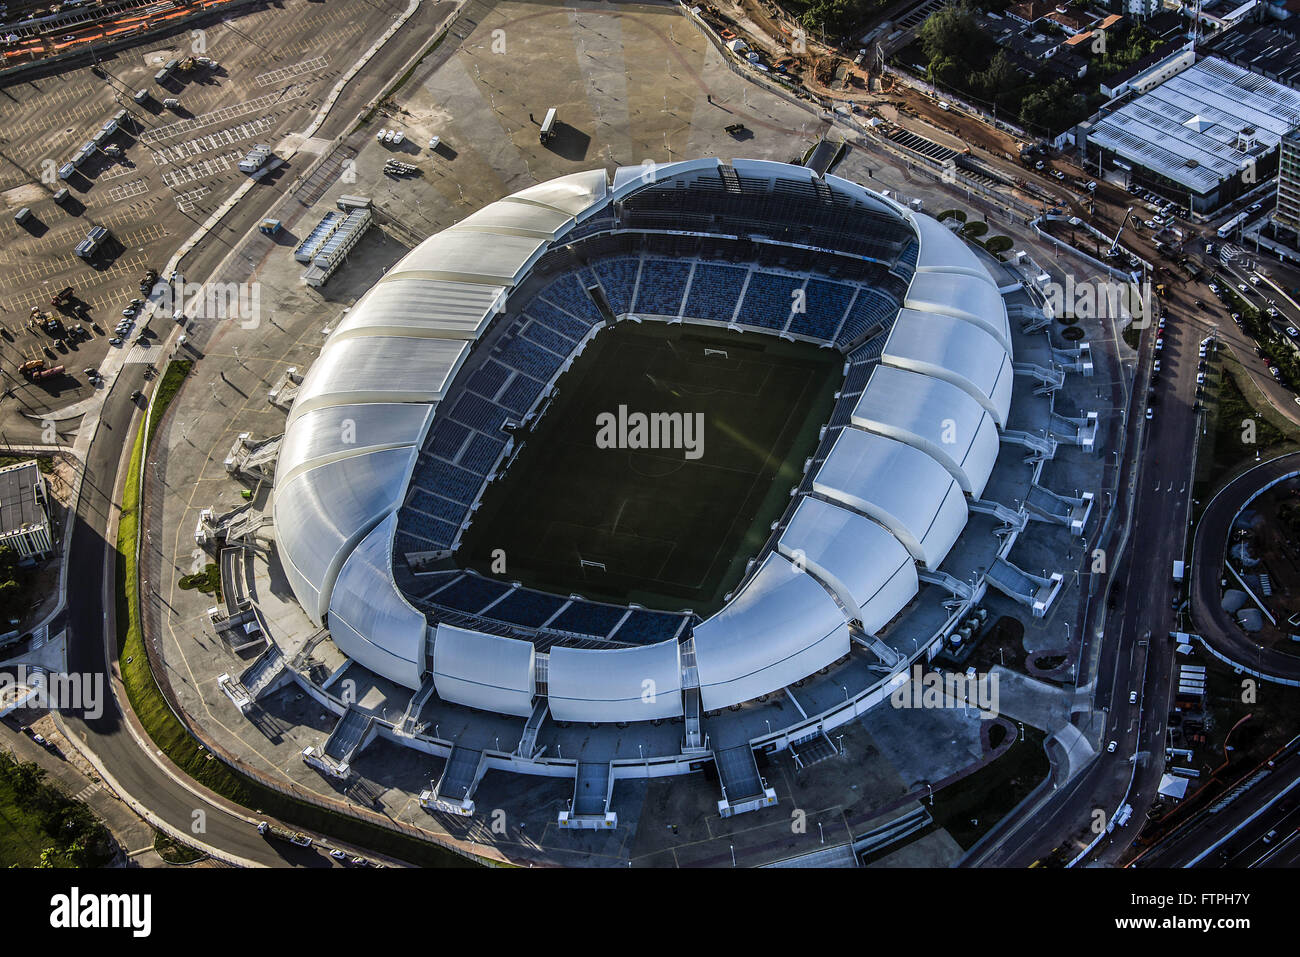 Vue aérienne de l'Arena das Dunas - Stadium construit pour accueillir la Coupe du Monde FIFA 2014 Banque D'Images